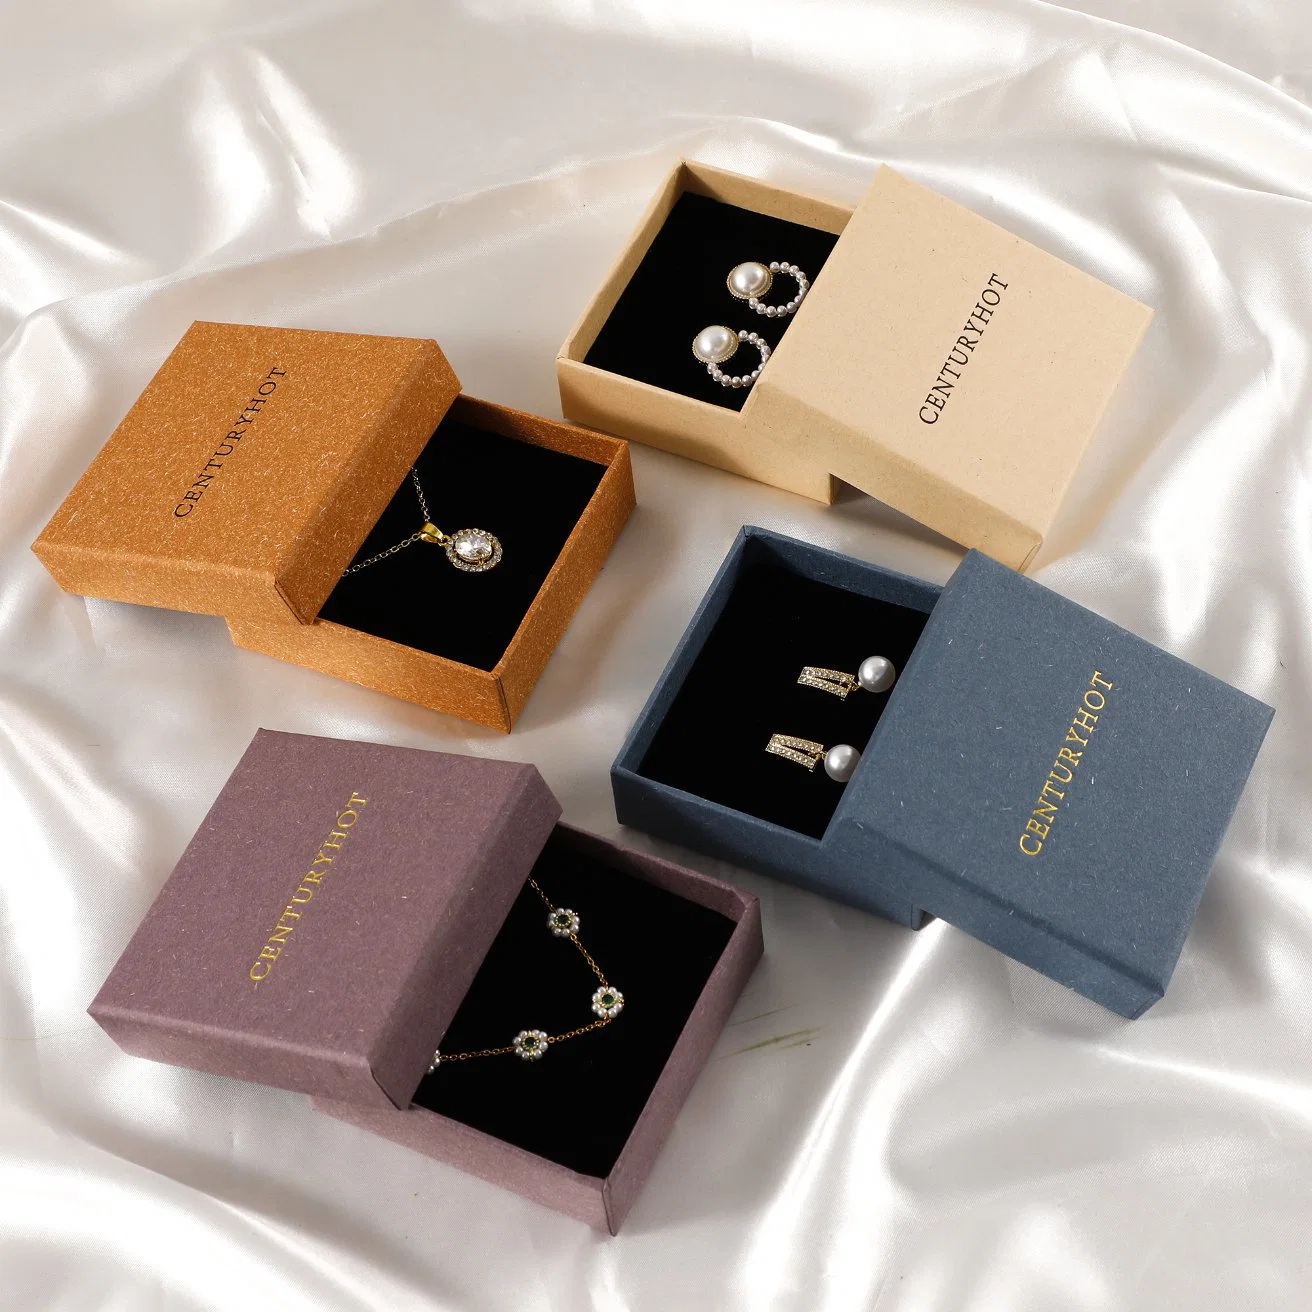 Faible MOQ Boîte à bijoux personnalisée avec logo personnalisé Boîte cadeau Boîte en papier Boîte à colliers multicolore Boîte à bracelets Boîte à bijoux avec coussin en éponge Chic Petite boîte de rangement pour bijoux